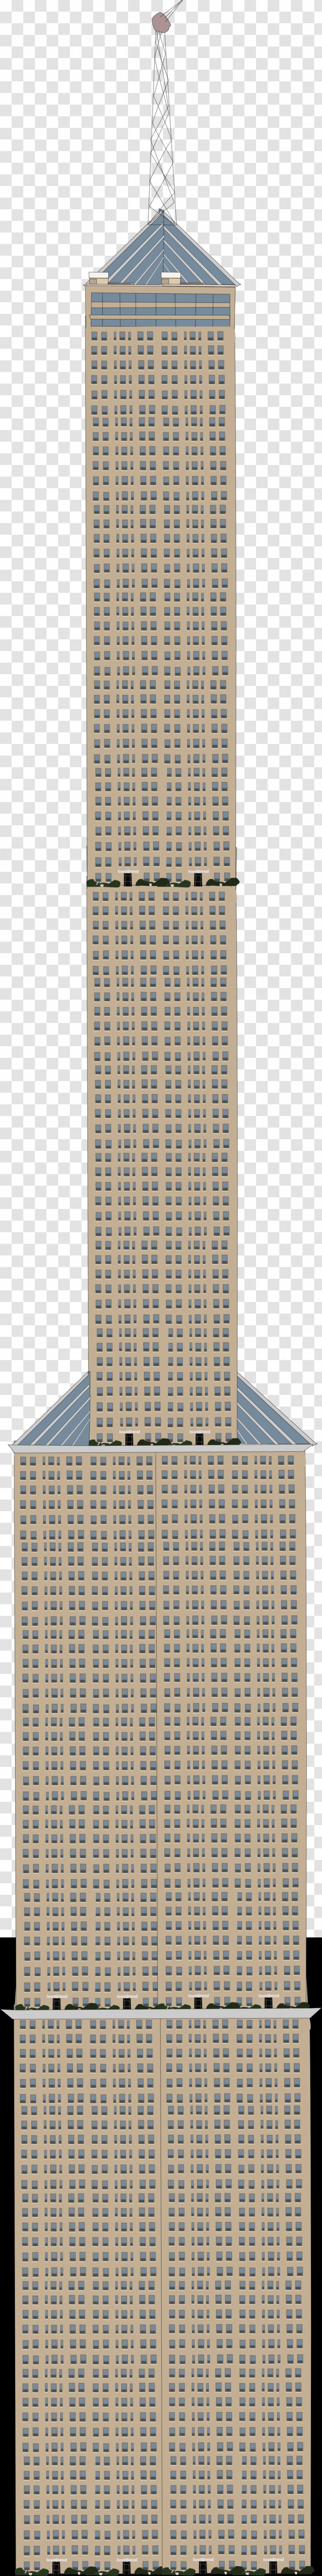 Building Skyscraper Facade - Skycraper Transparent PNG